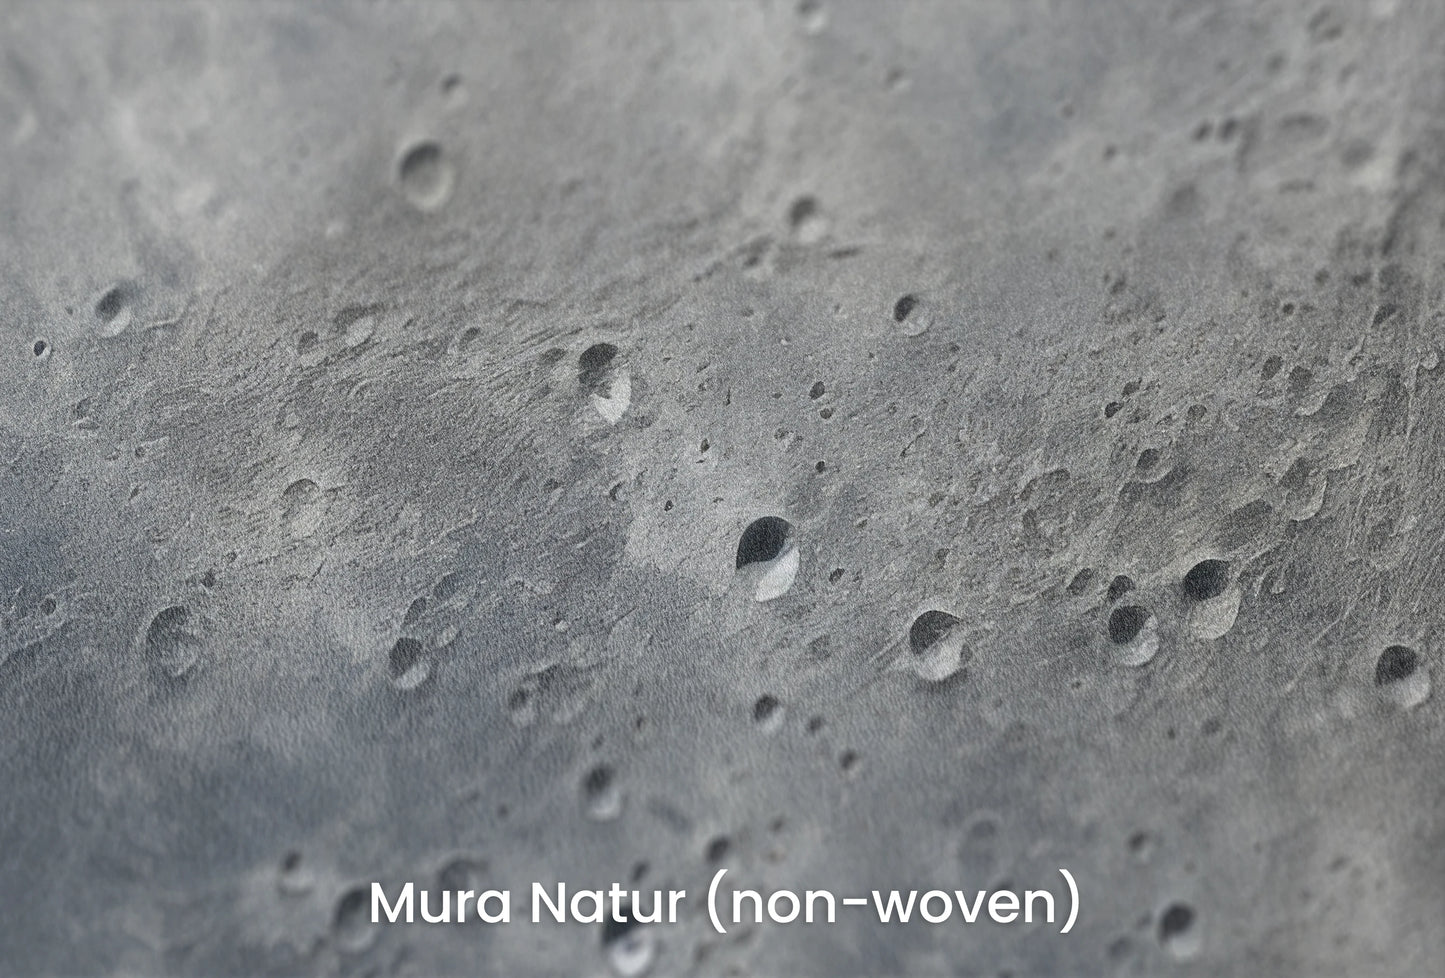 Zbliżenie na artystyczną fototapetę o nazwie Moon's Mystery na podłożu Mura Natur (non-woven) - naturalne i ekologiczne podłoże.